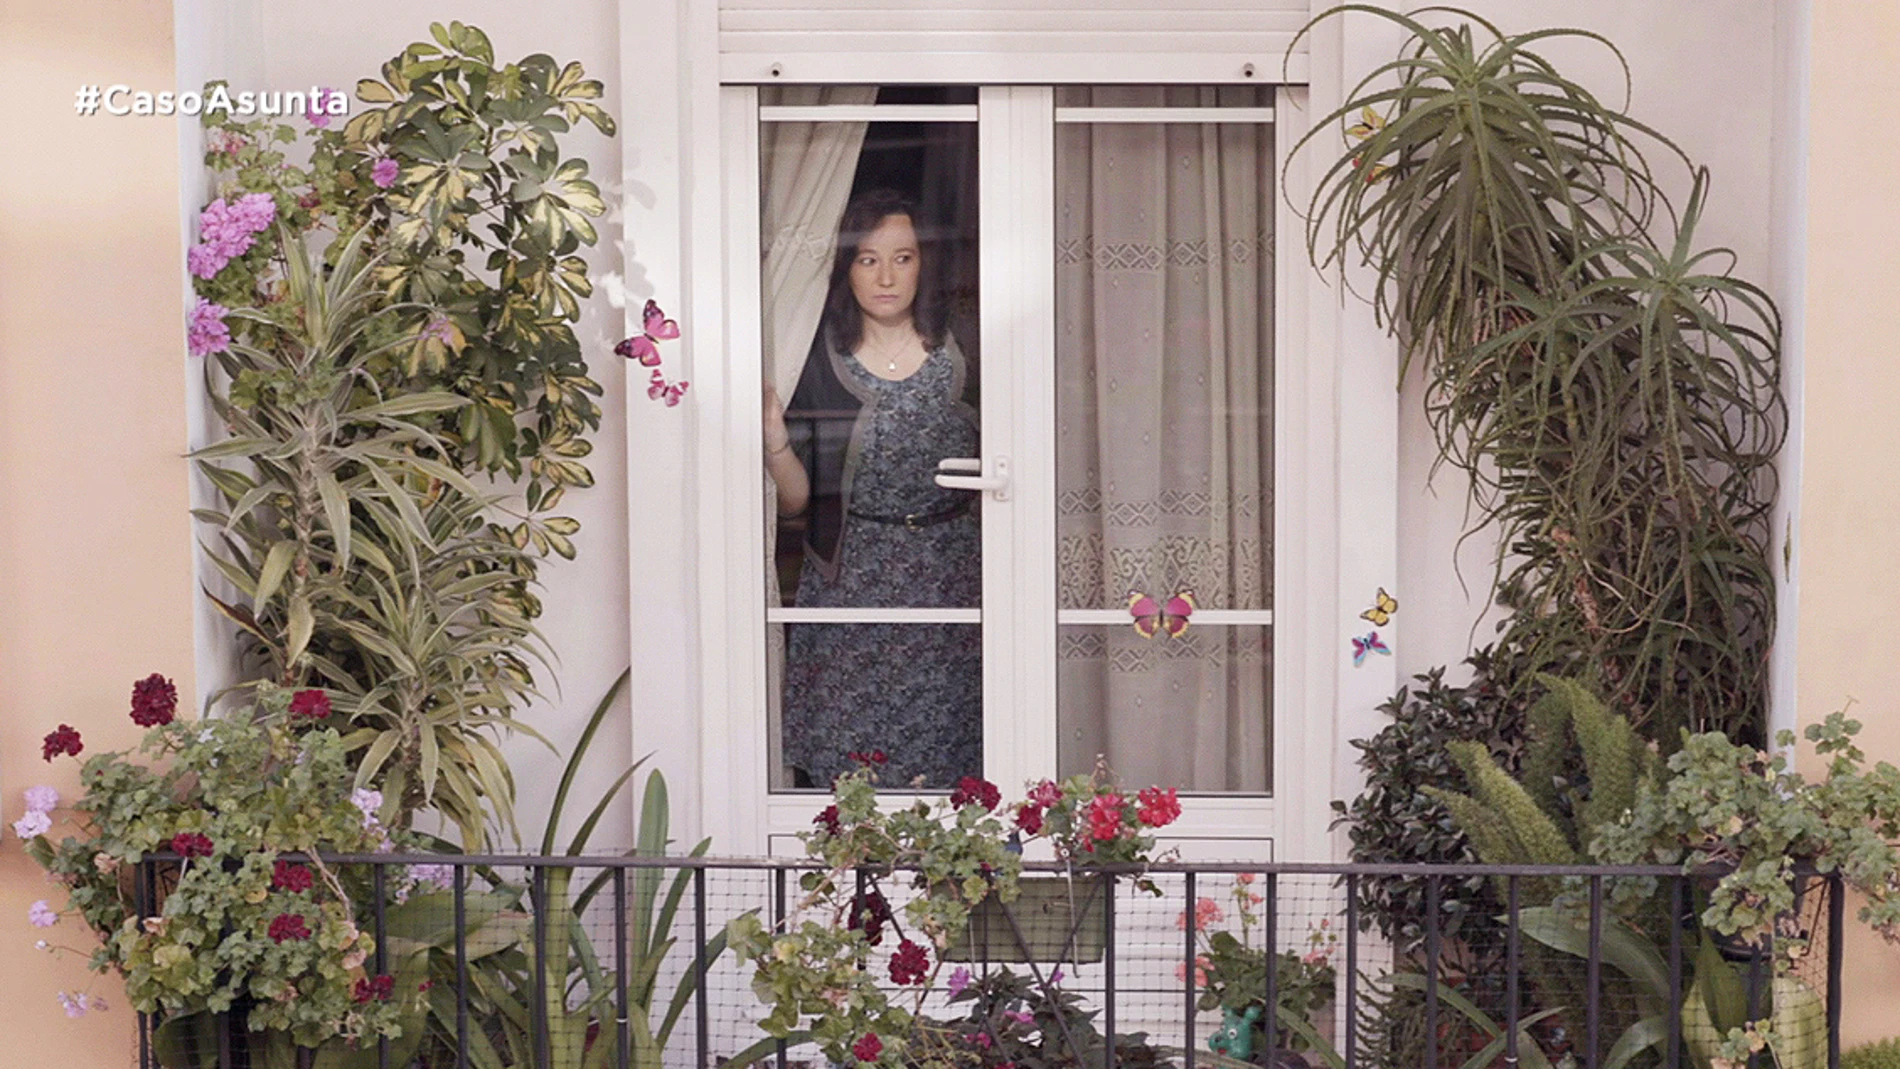 La vecina de Rosario Porto pone en duda el incidente del desconocido que entró en casa